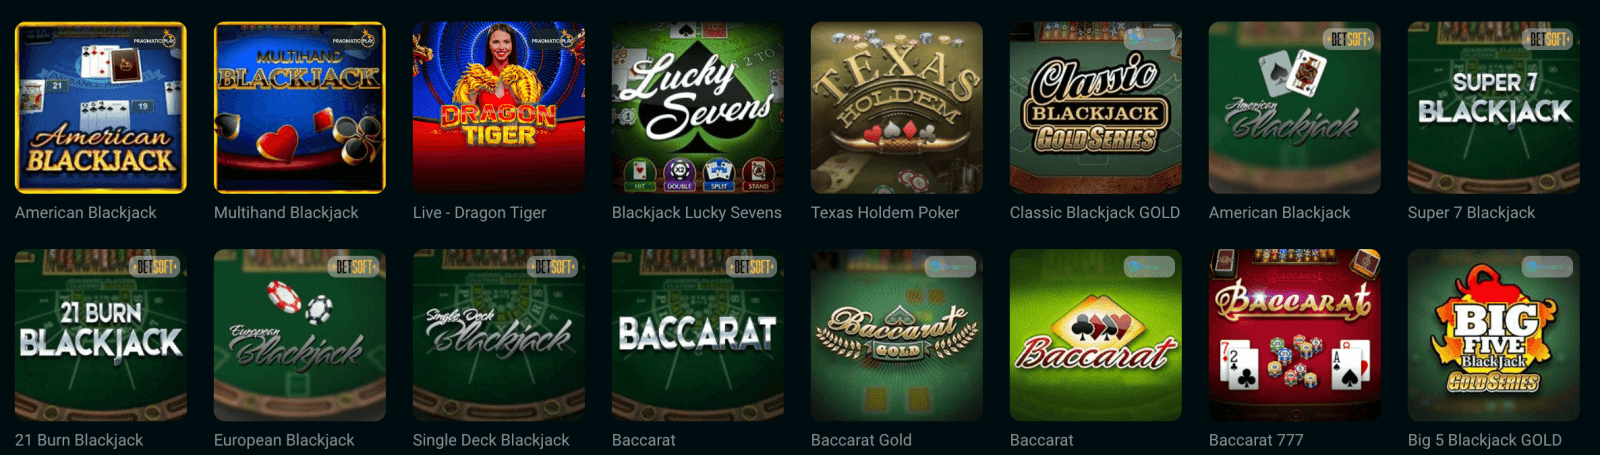 Скріншот доступних настільних ігор онлайн казино GG.BET